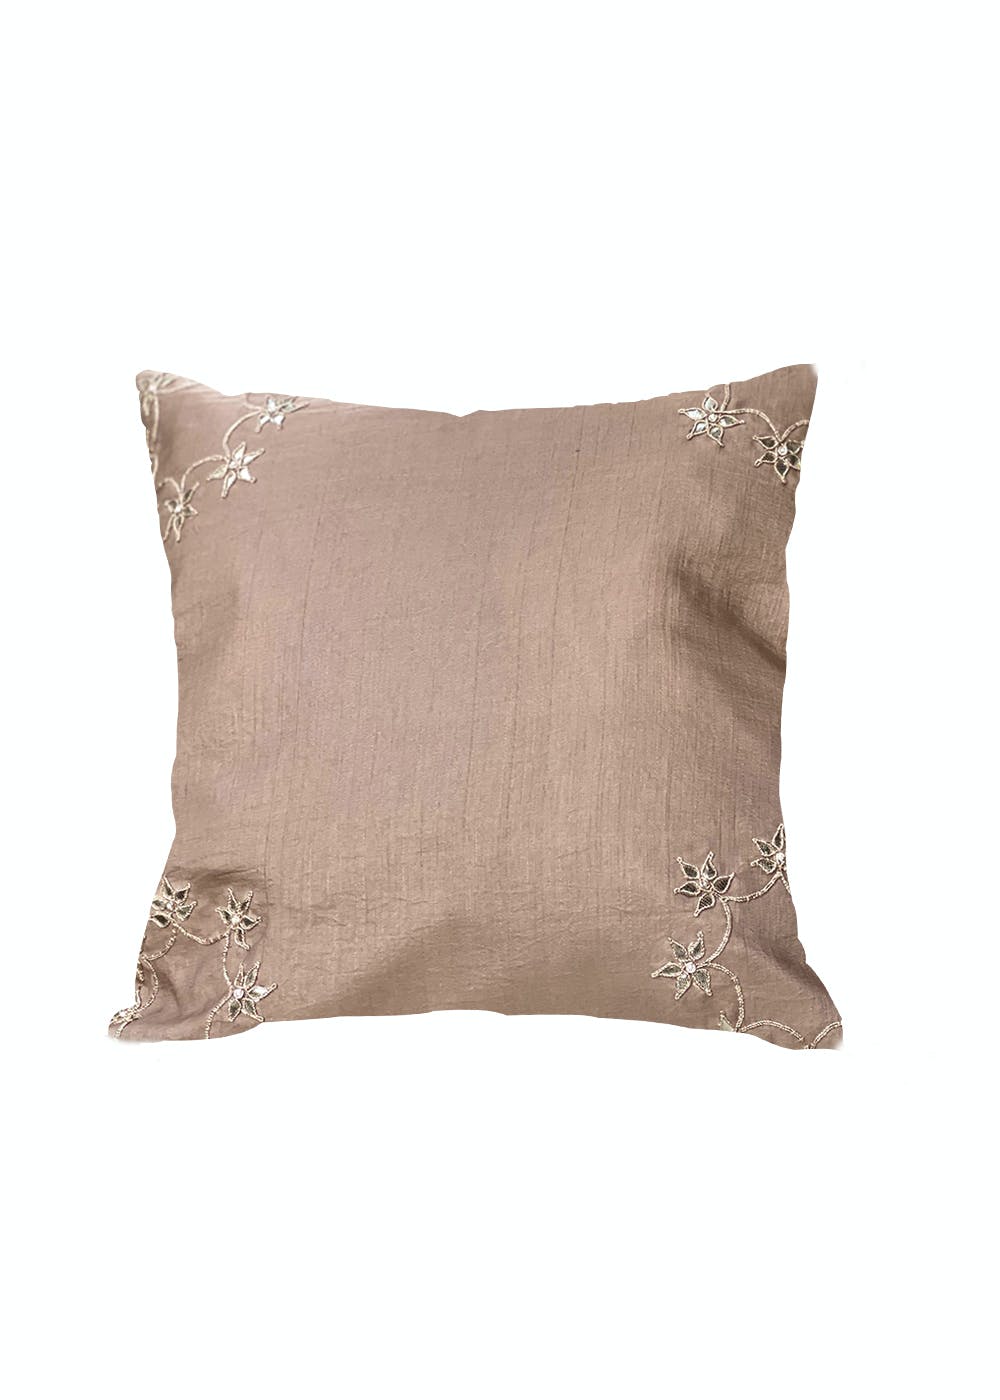 Zari Gota Embellished Cushion Cover - Rose Gold